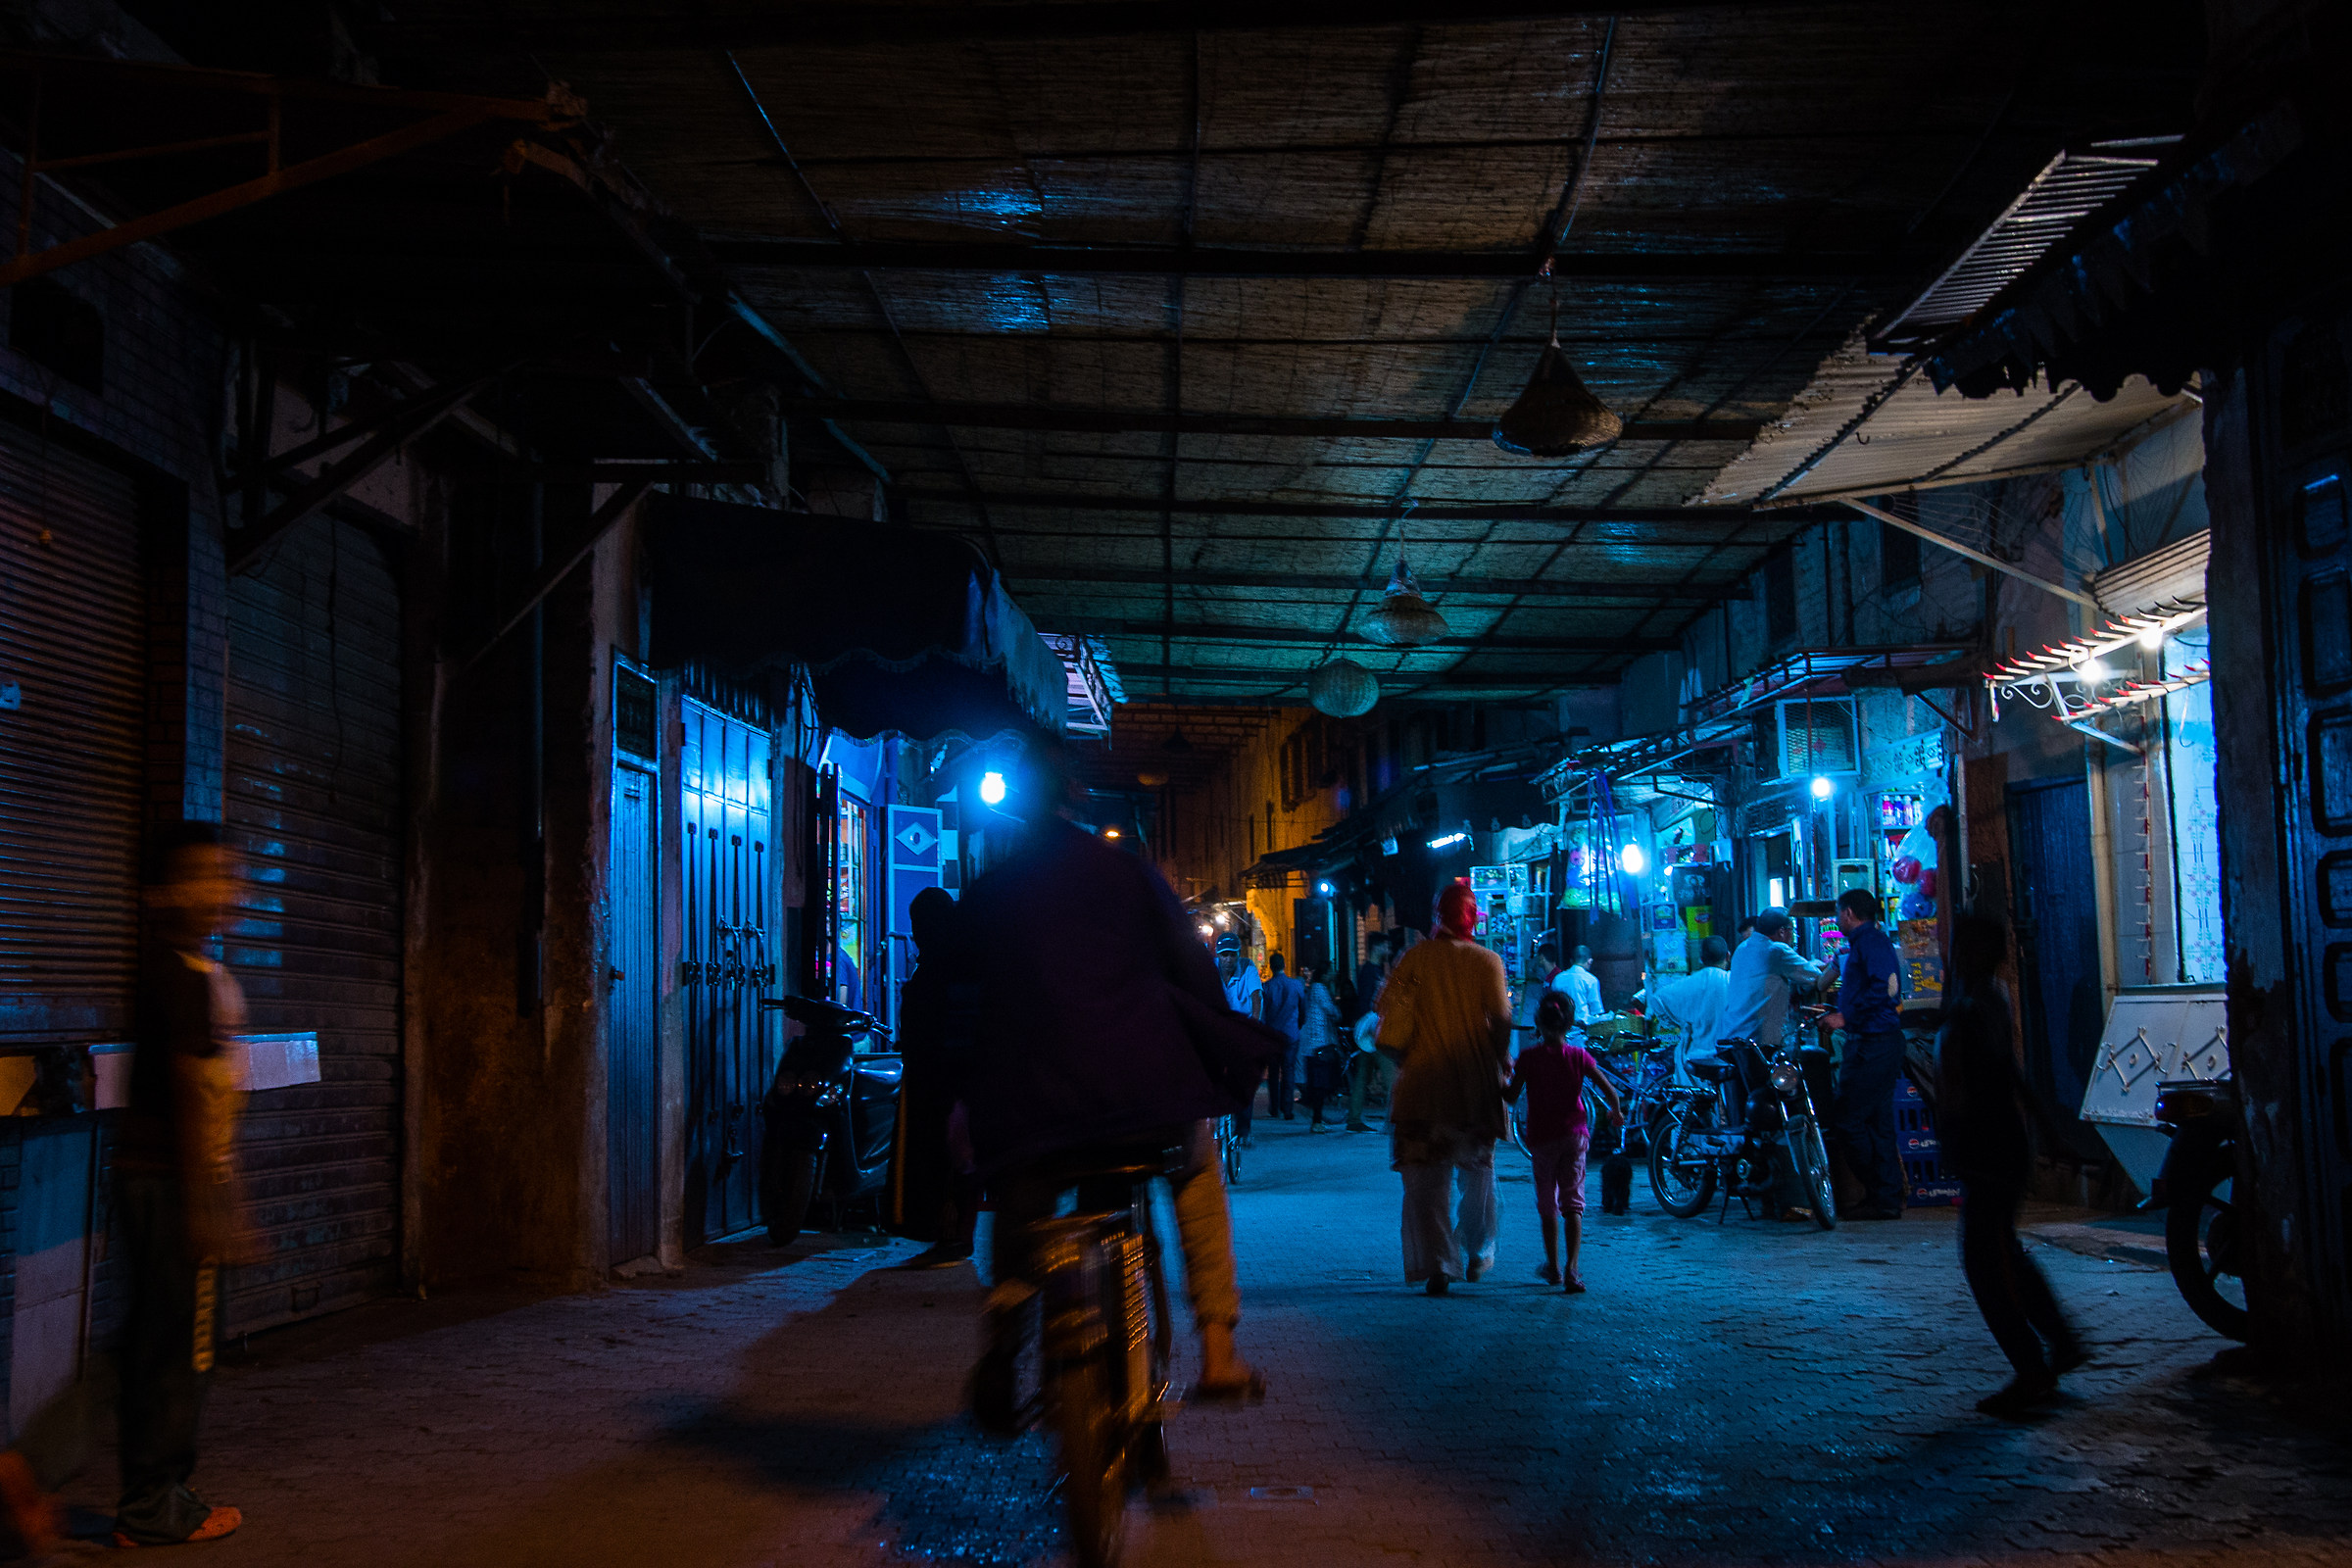 Marrakech - nightlife in the medina...